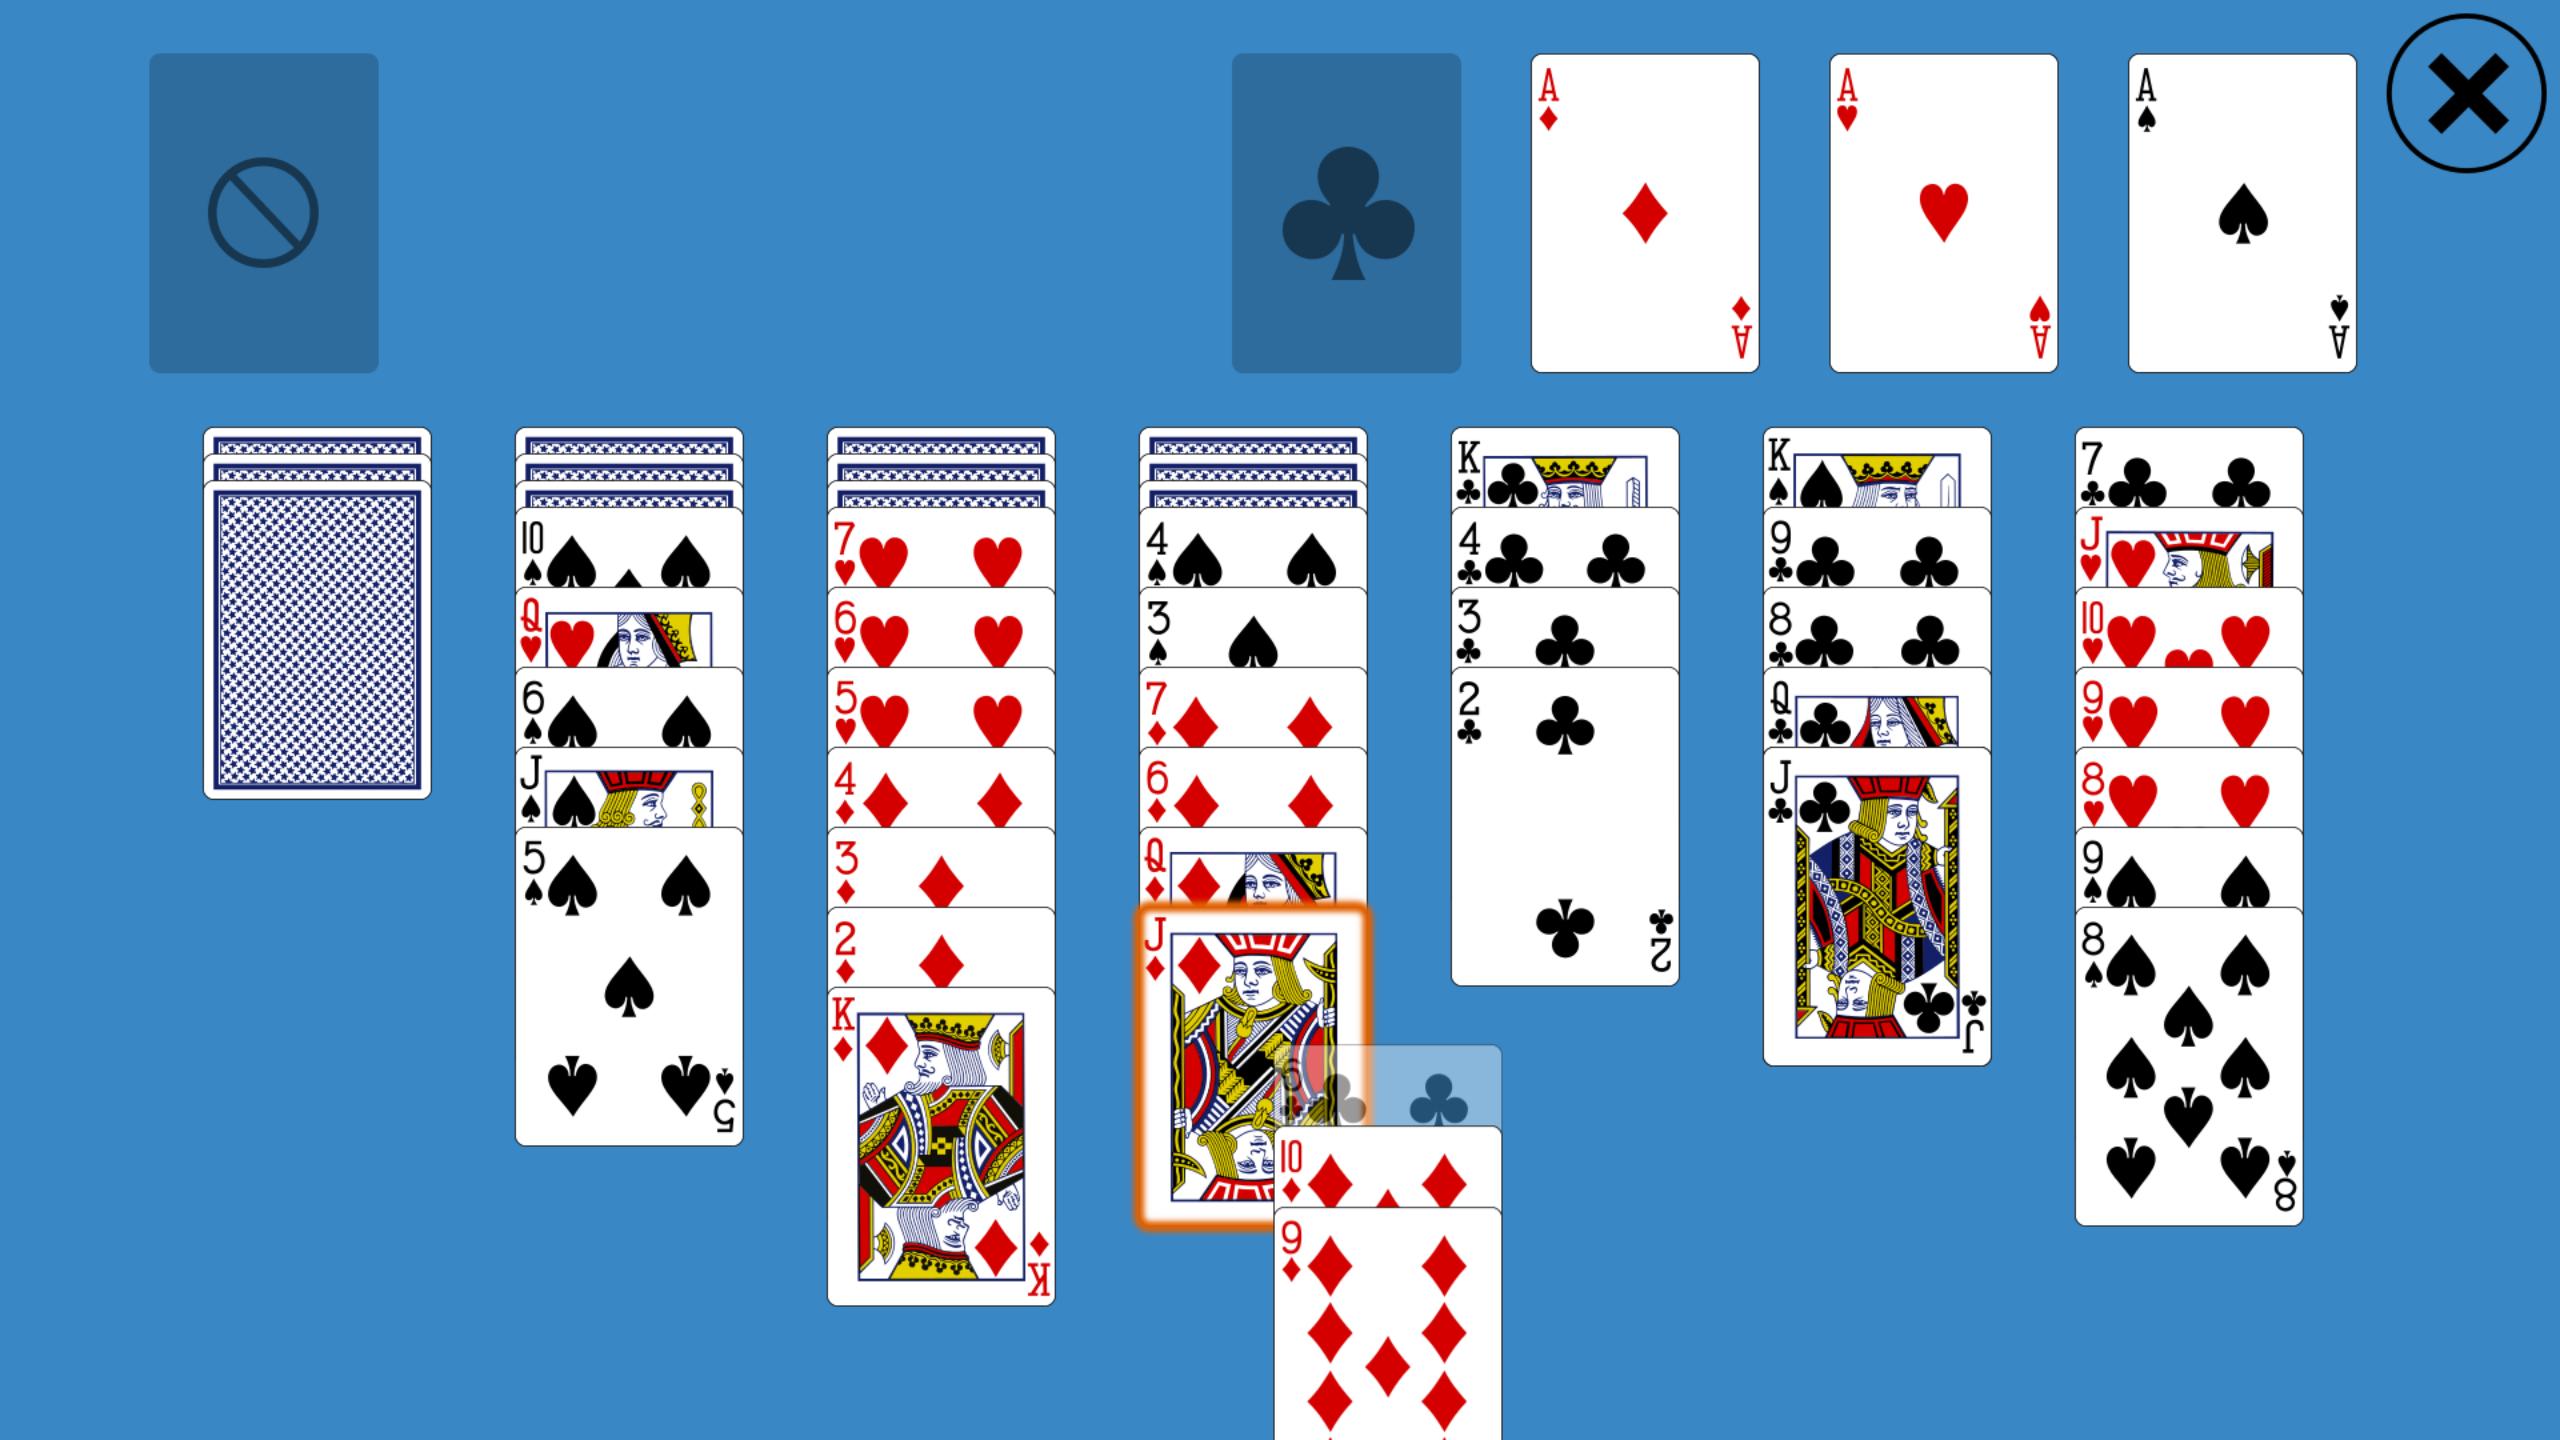 Пасьянс скорпион сложный игра играть. Косынка расклад 36 карт. Разложить пасьянс. Пасьянс из 36 карт для начинающих. Пасьянс разложить на картах.